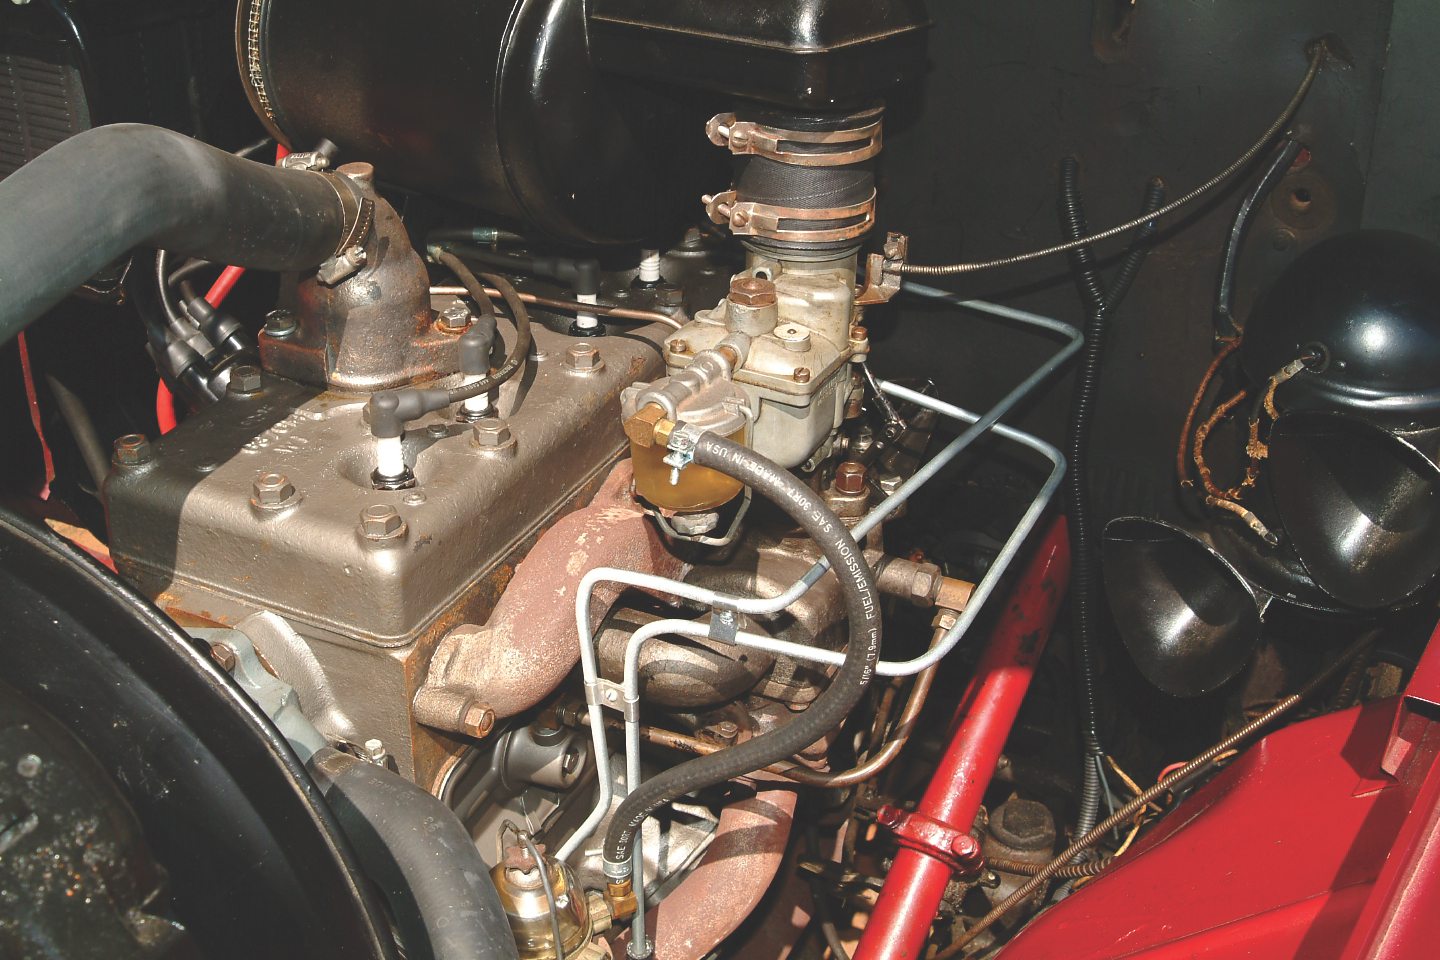 1949 Jeepster 134cid 4-cylinder Go Devil engine